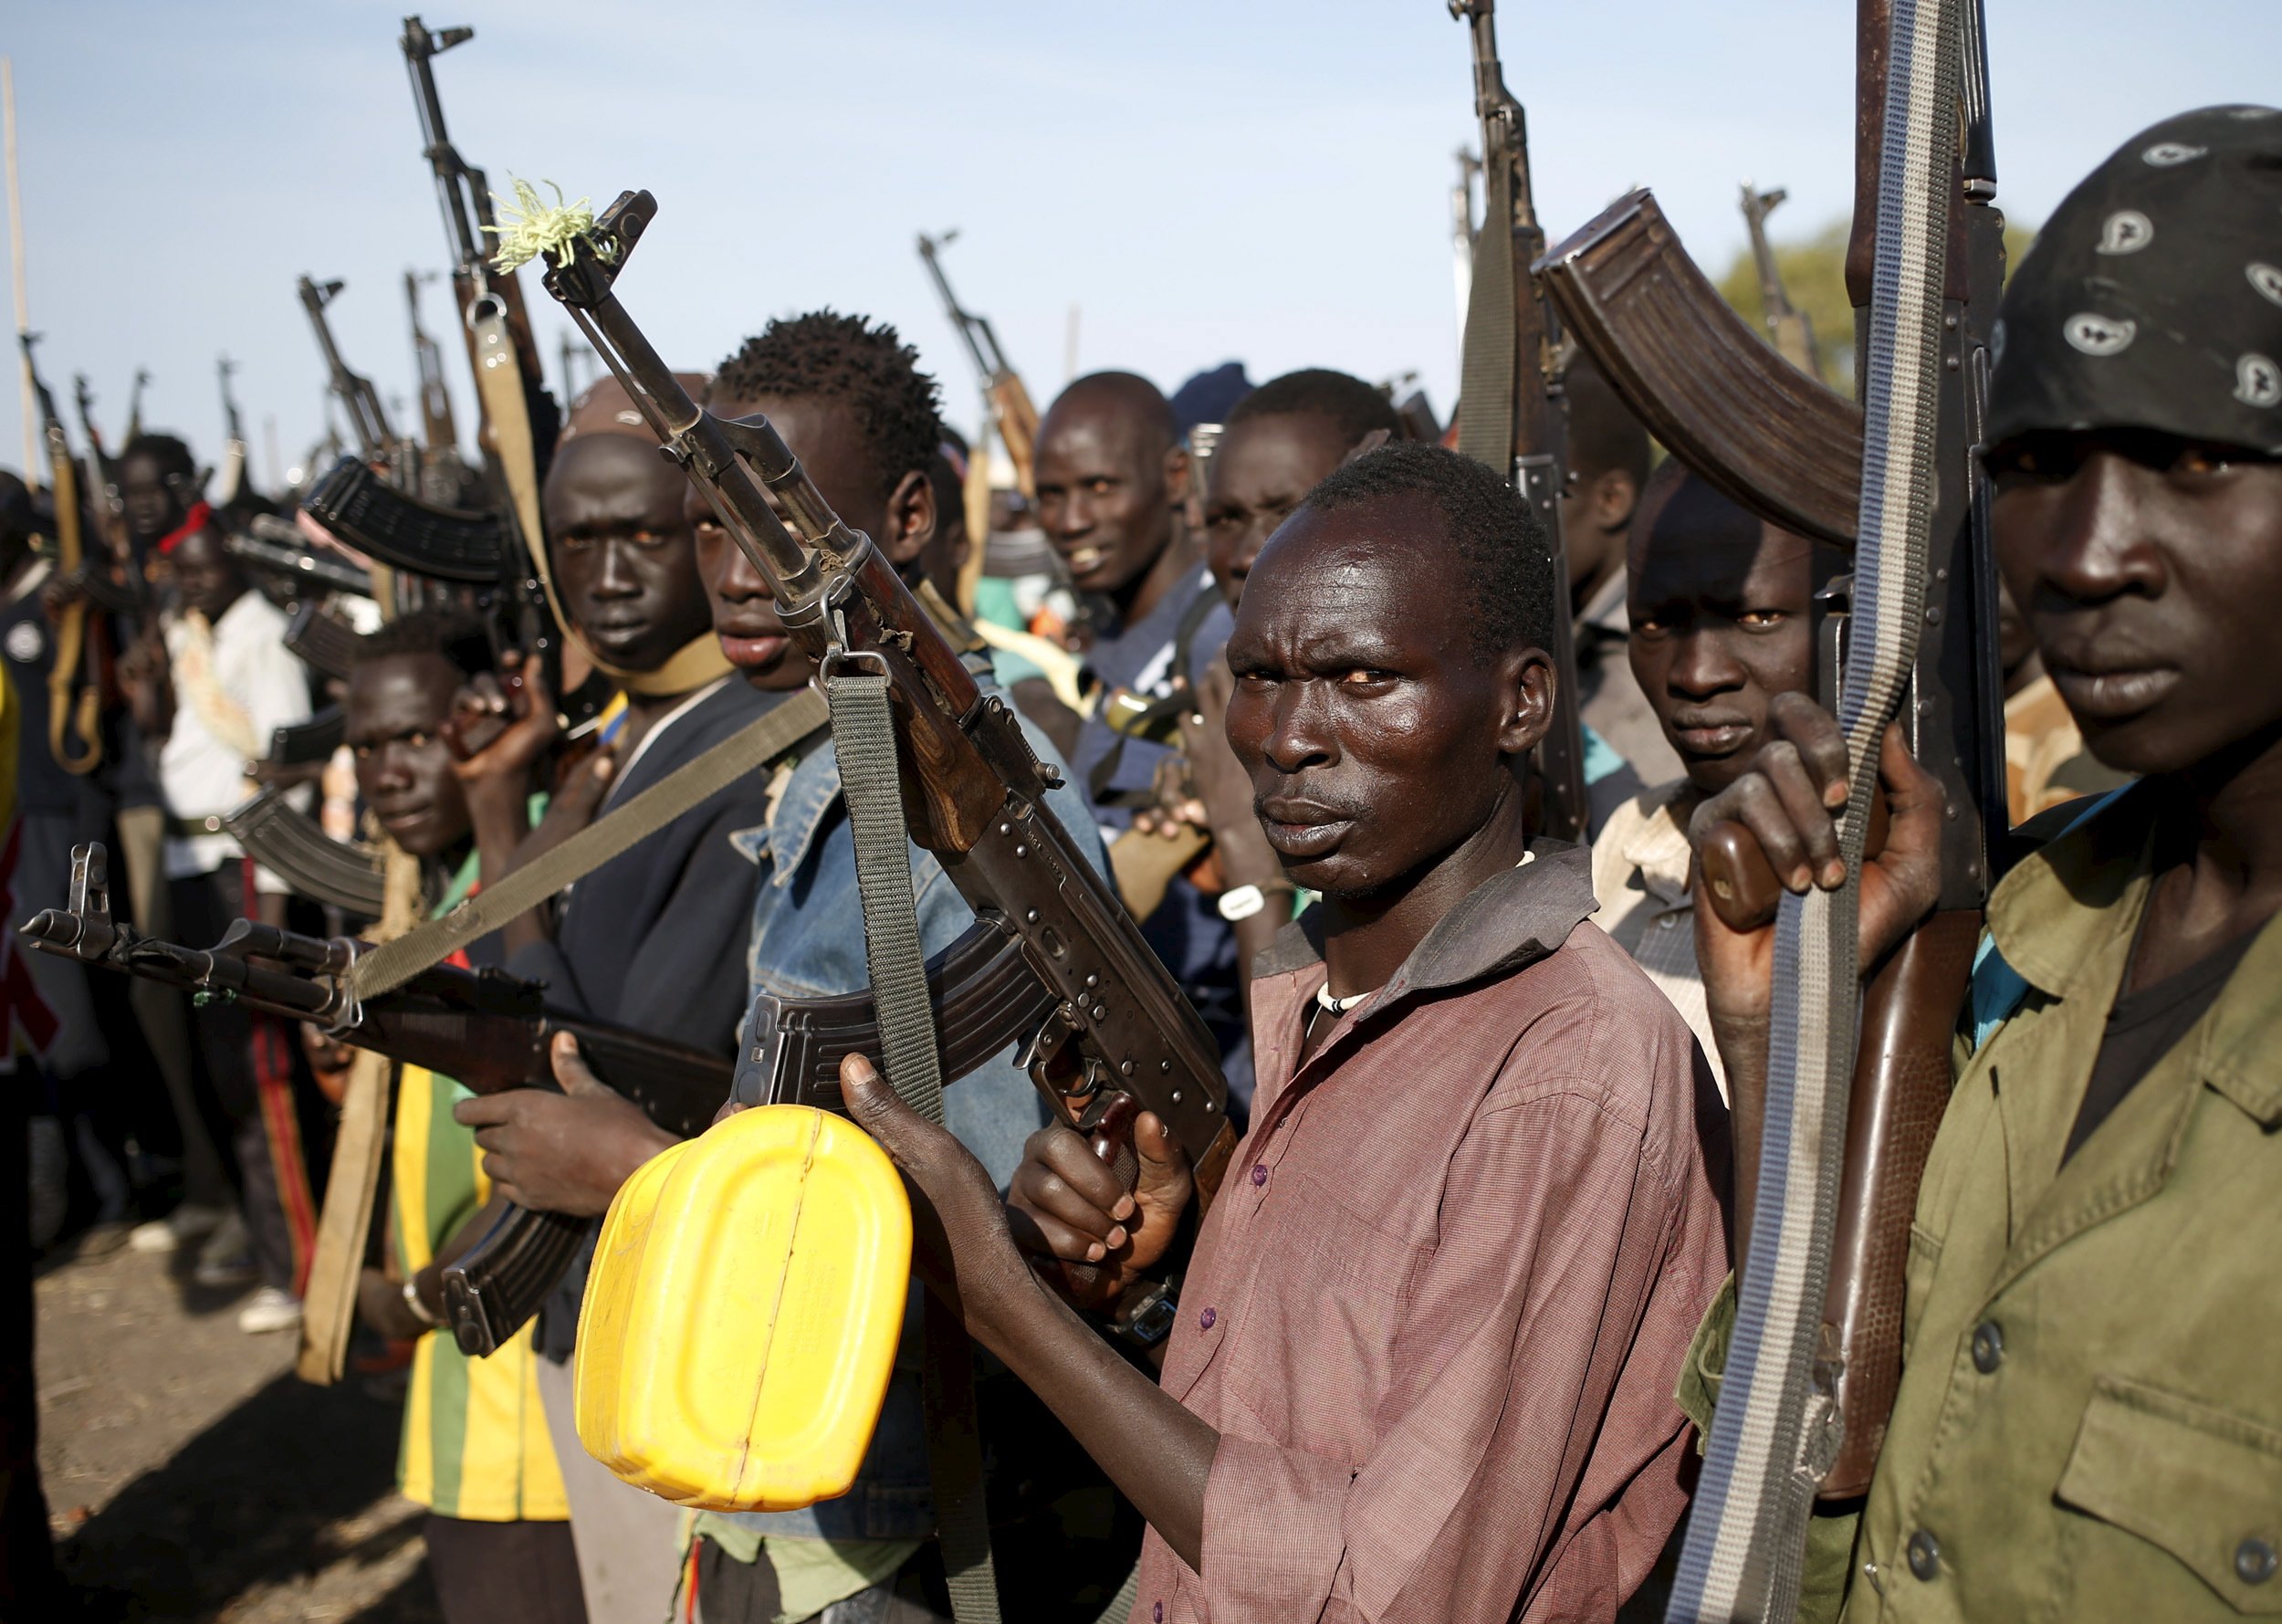 year-of-civil-war-in-sudan-millions-starving-faces-humanitarian-crisis